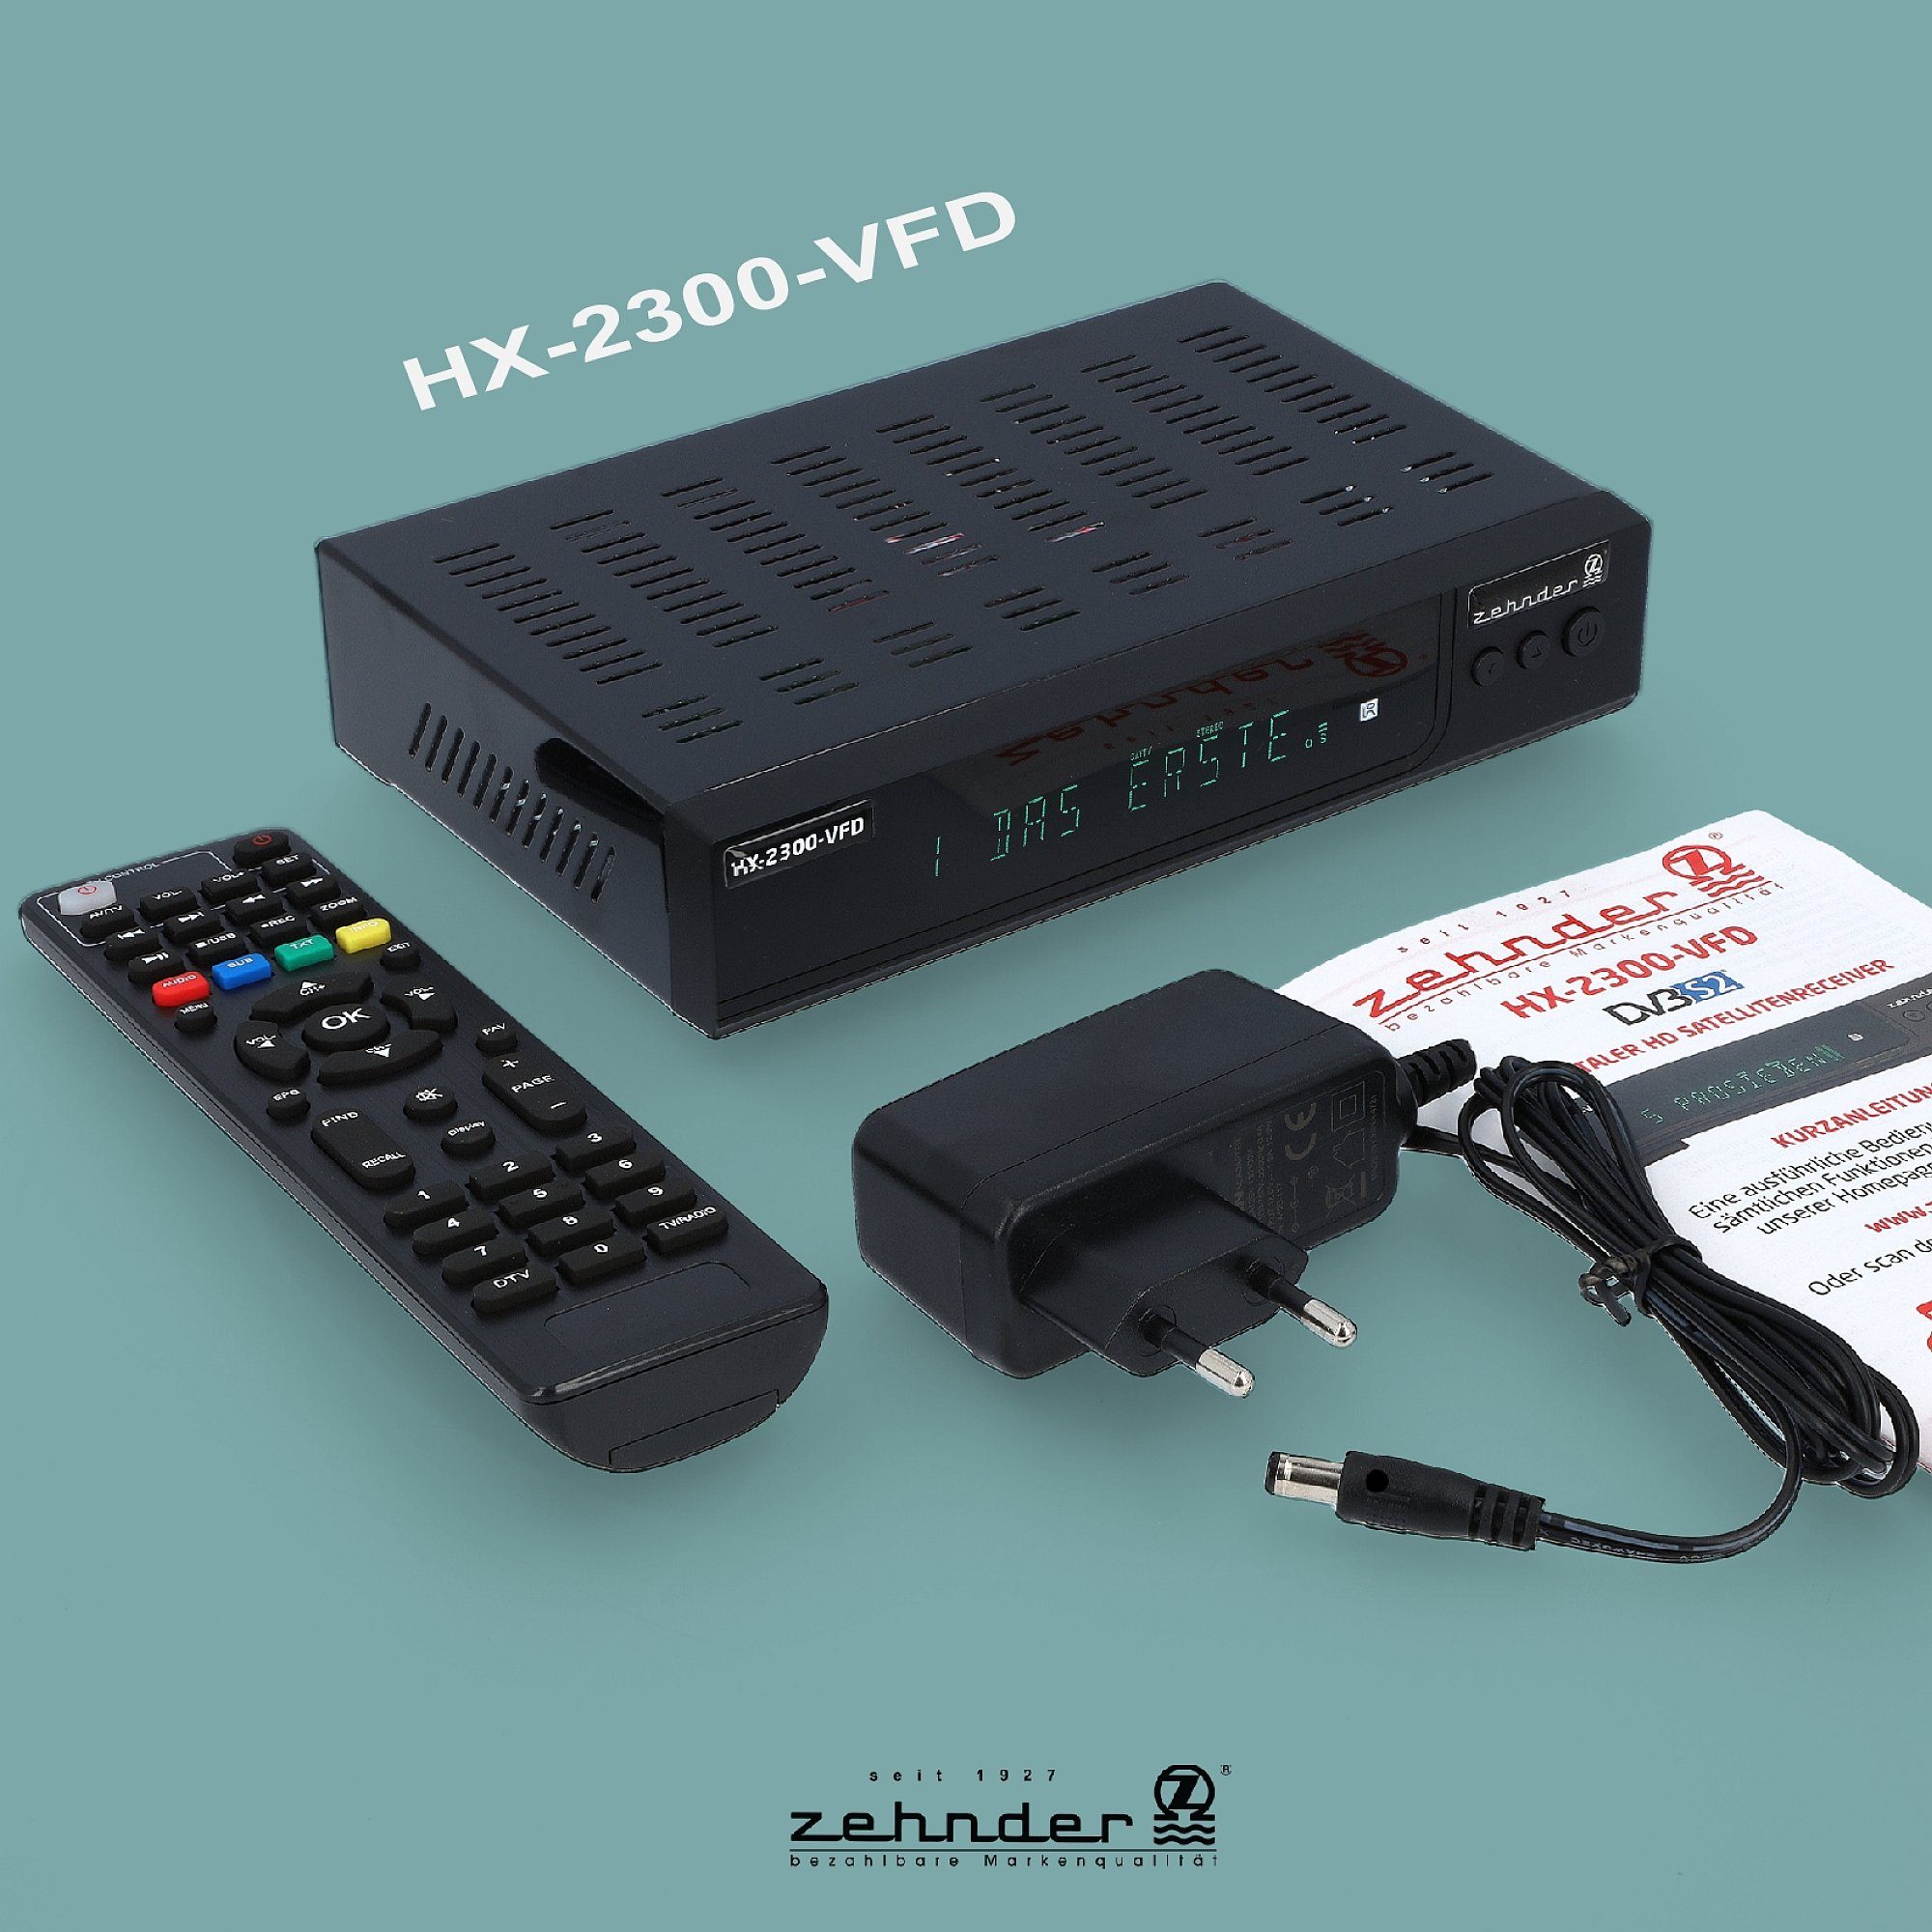 HDMI, SCART, 12V USB, PVR, HX-2300-Alphanumerisches Einkabel - tauglich) Display (AAC-LC, Zehnder SAT-Receiver Coaxial,